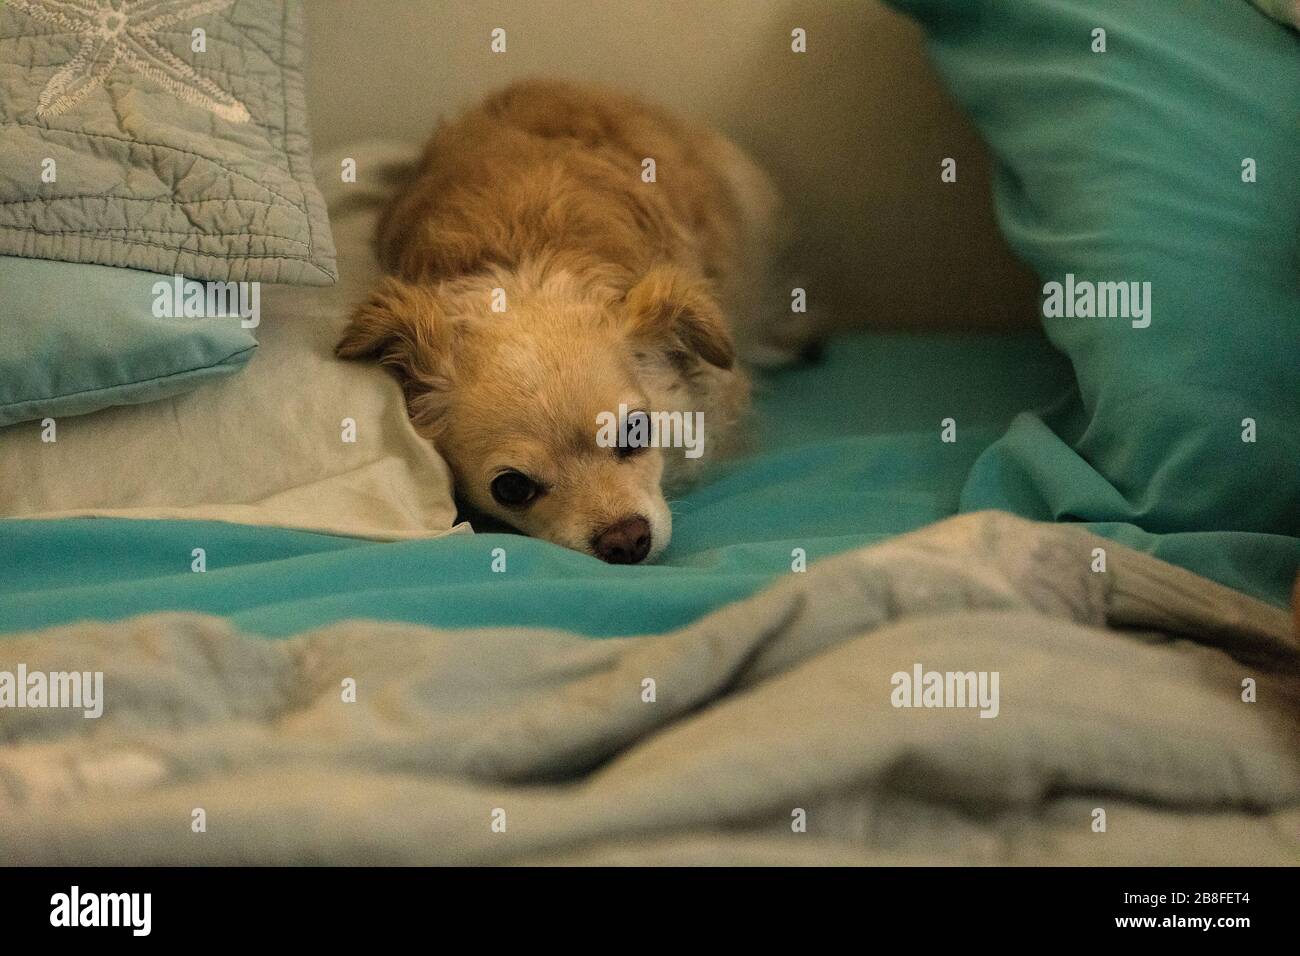 Le Chihuahua, un long et piquant, s'est enchevêtré dans un lit humain avec des draps bleus. Banque D'Images